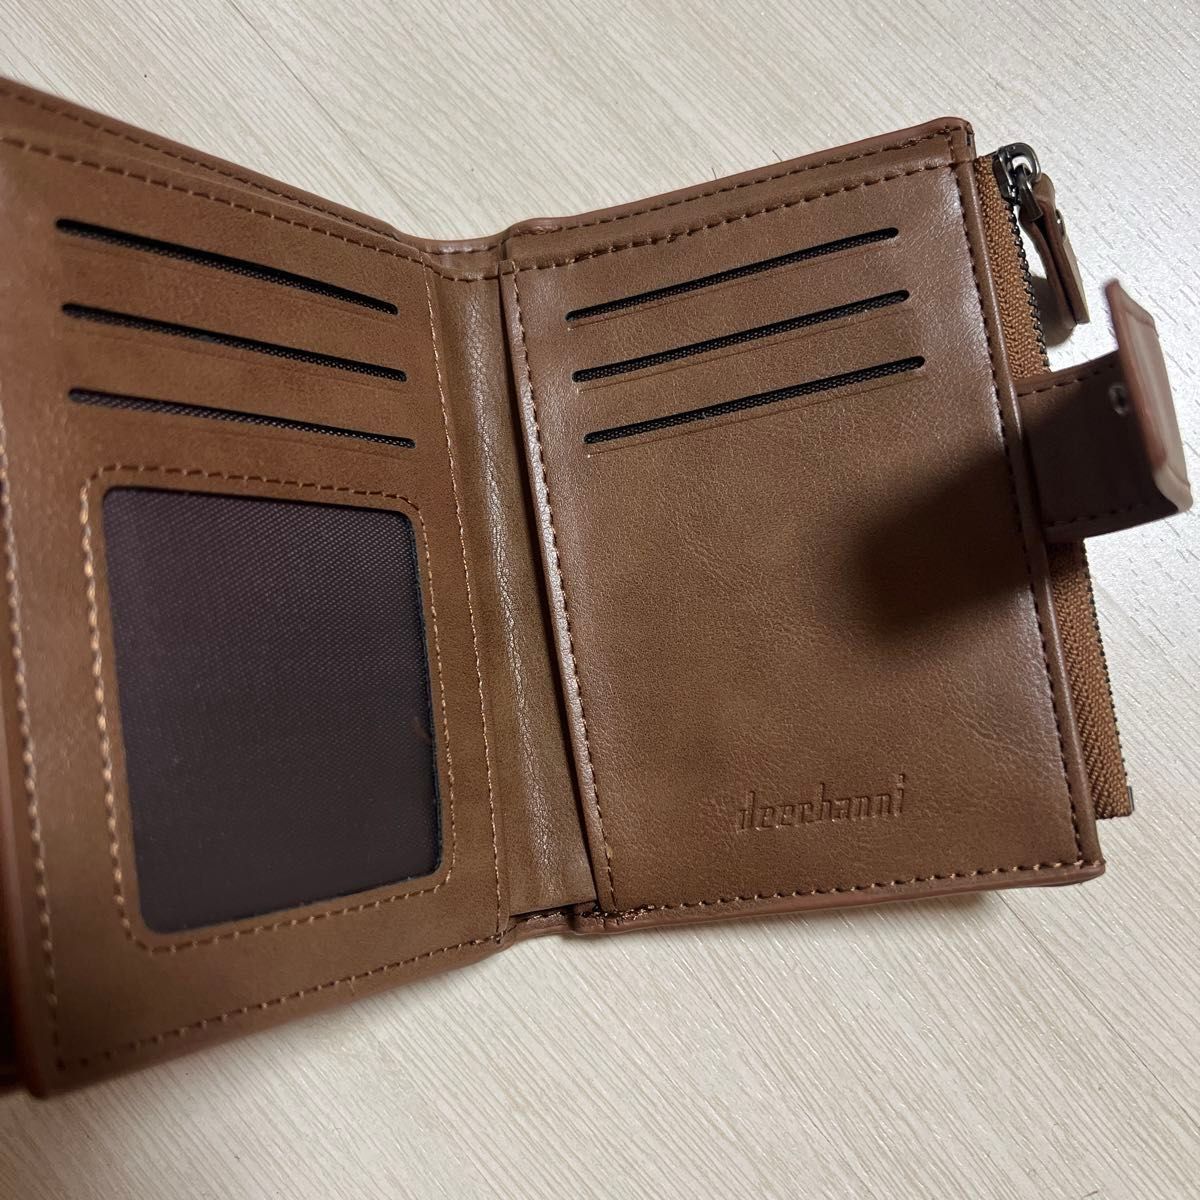 折り財布 ブラウン 茶色 メンズ 二つ折り財布 収納 シンプル ウォレット 財布